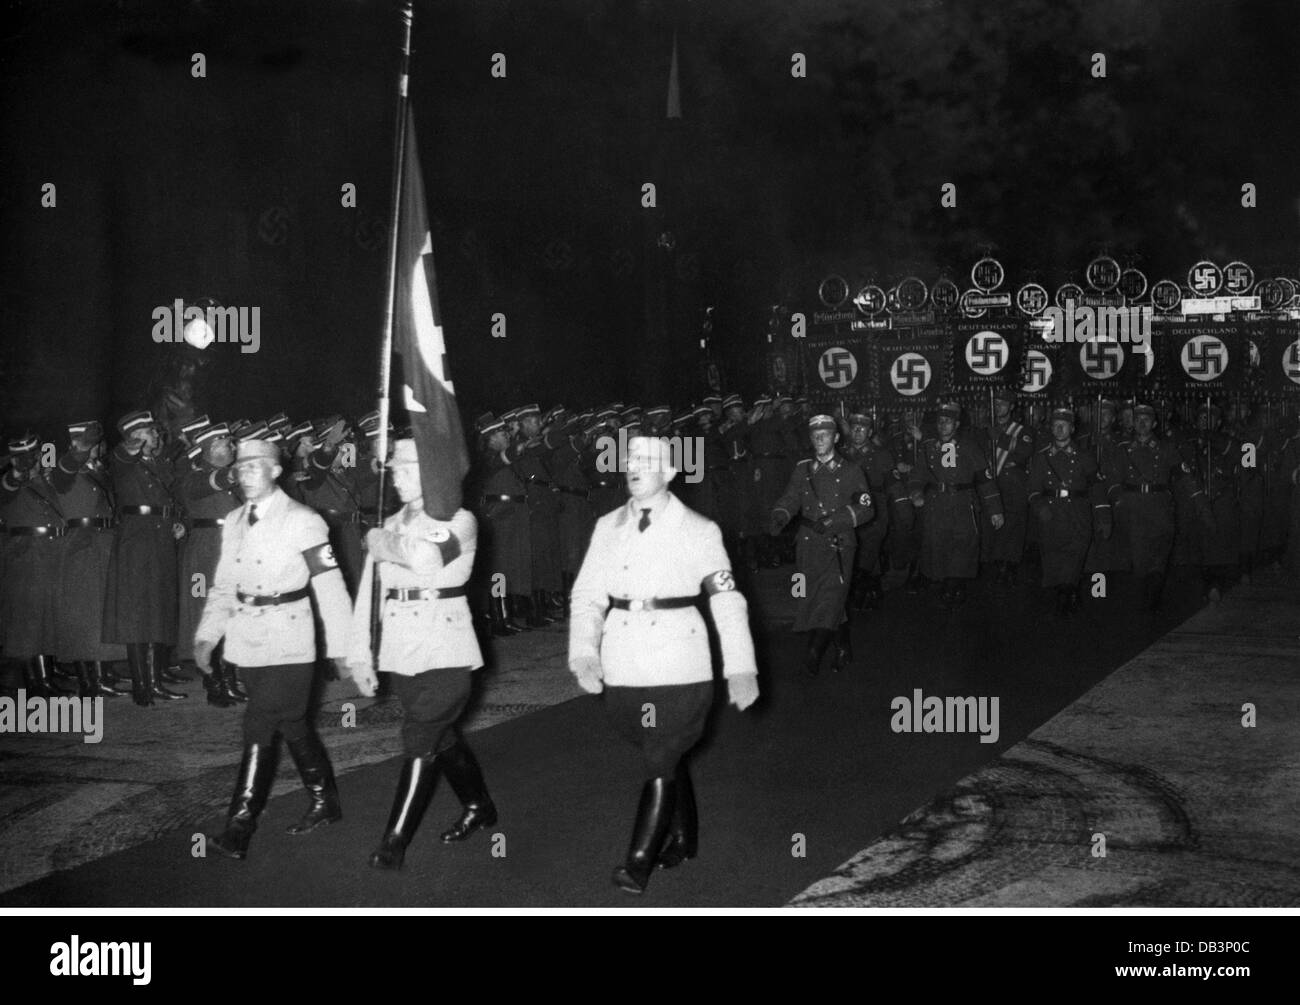 Nationalsozialismus, Organisationen, Sturmabteilung (SA), Parade in Erinnerung an die 'Marche zur Feldherrnhalle' 9.11.1923, München, um 1936, Zusatzrechte-Clearences-nicht vorhanden Stockfoto